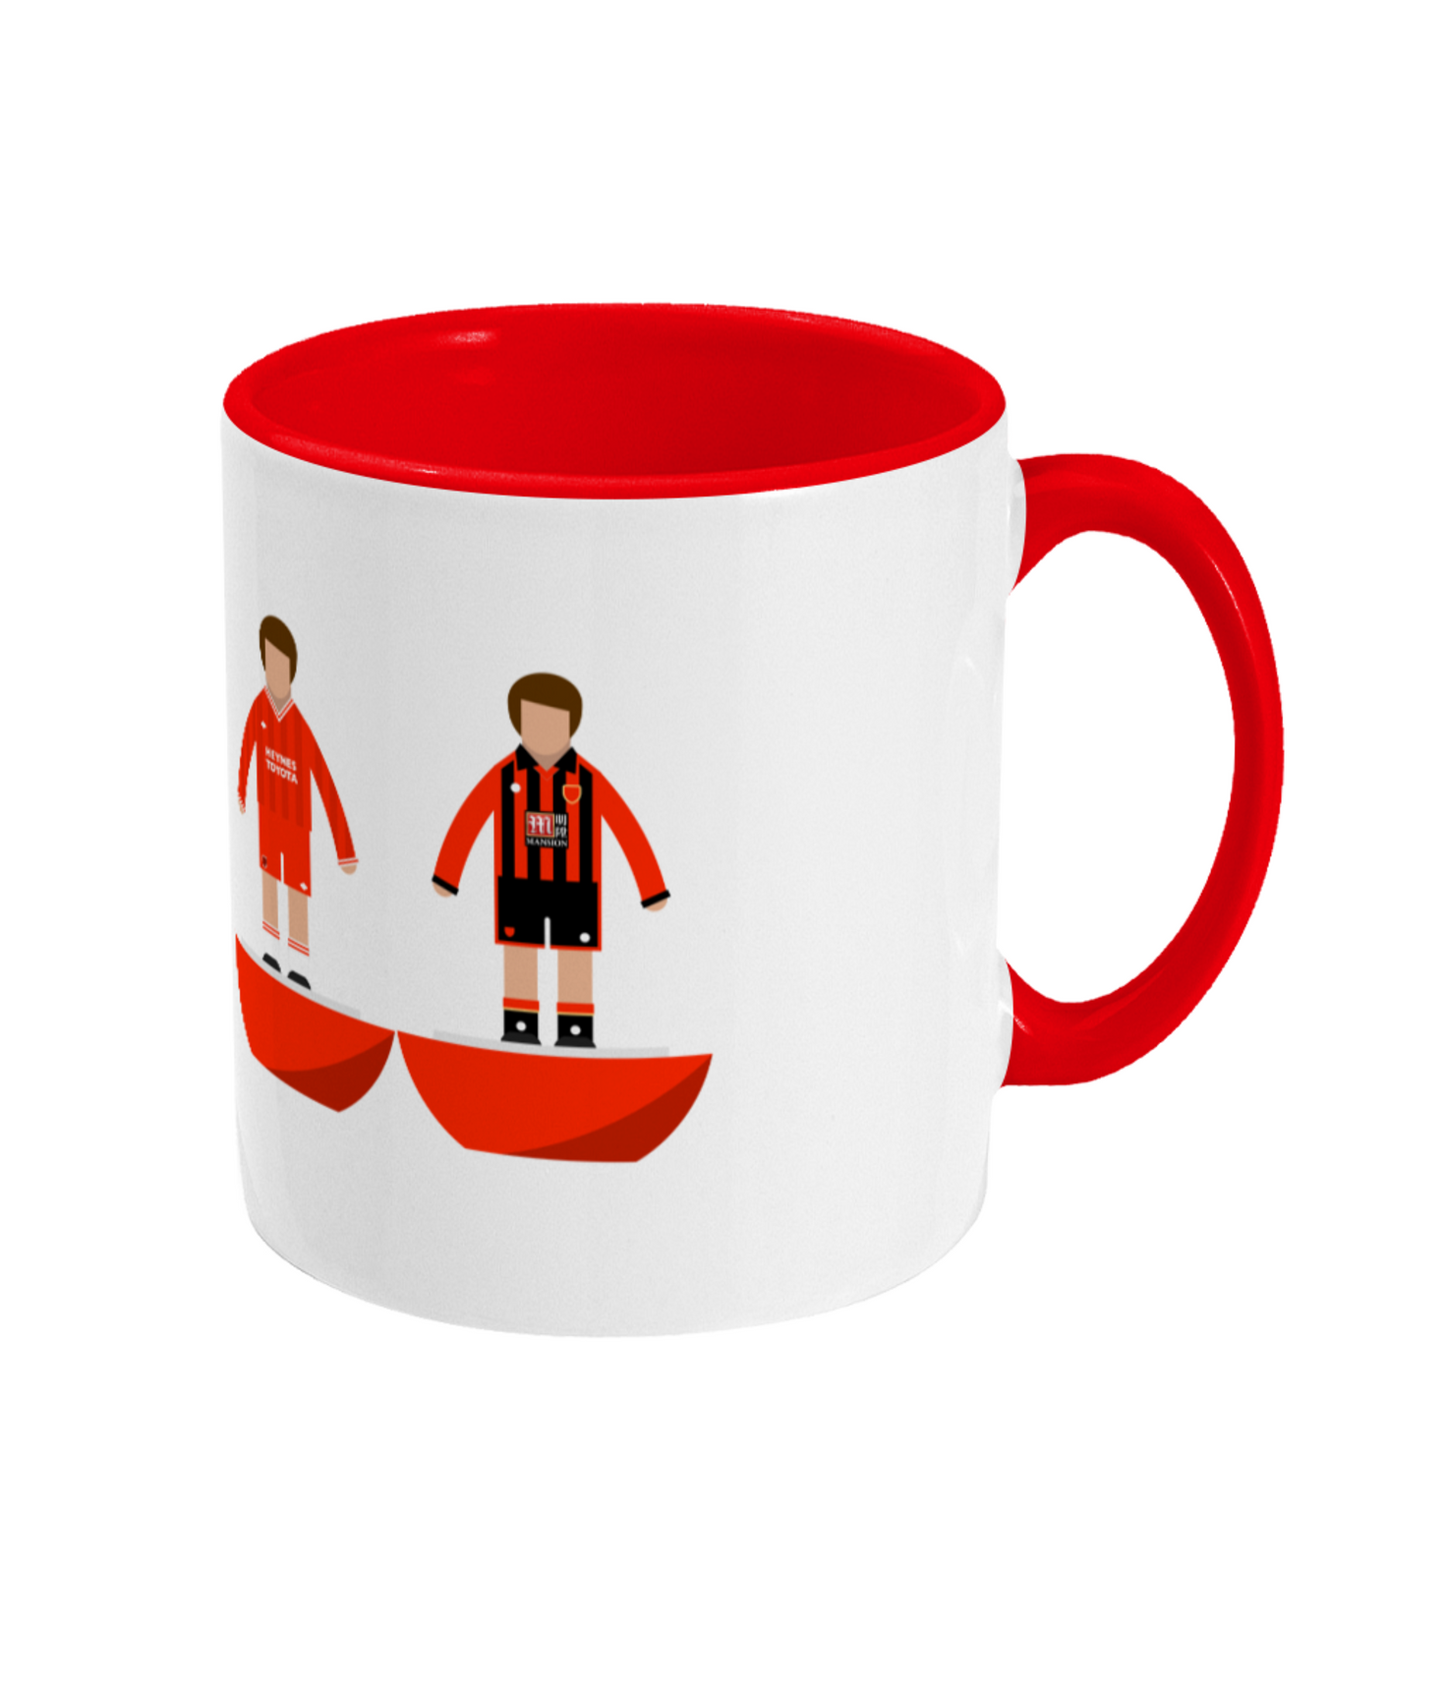 Football Kits 'Bournemouth combined' Mug